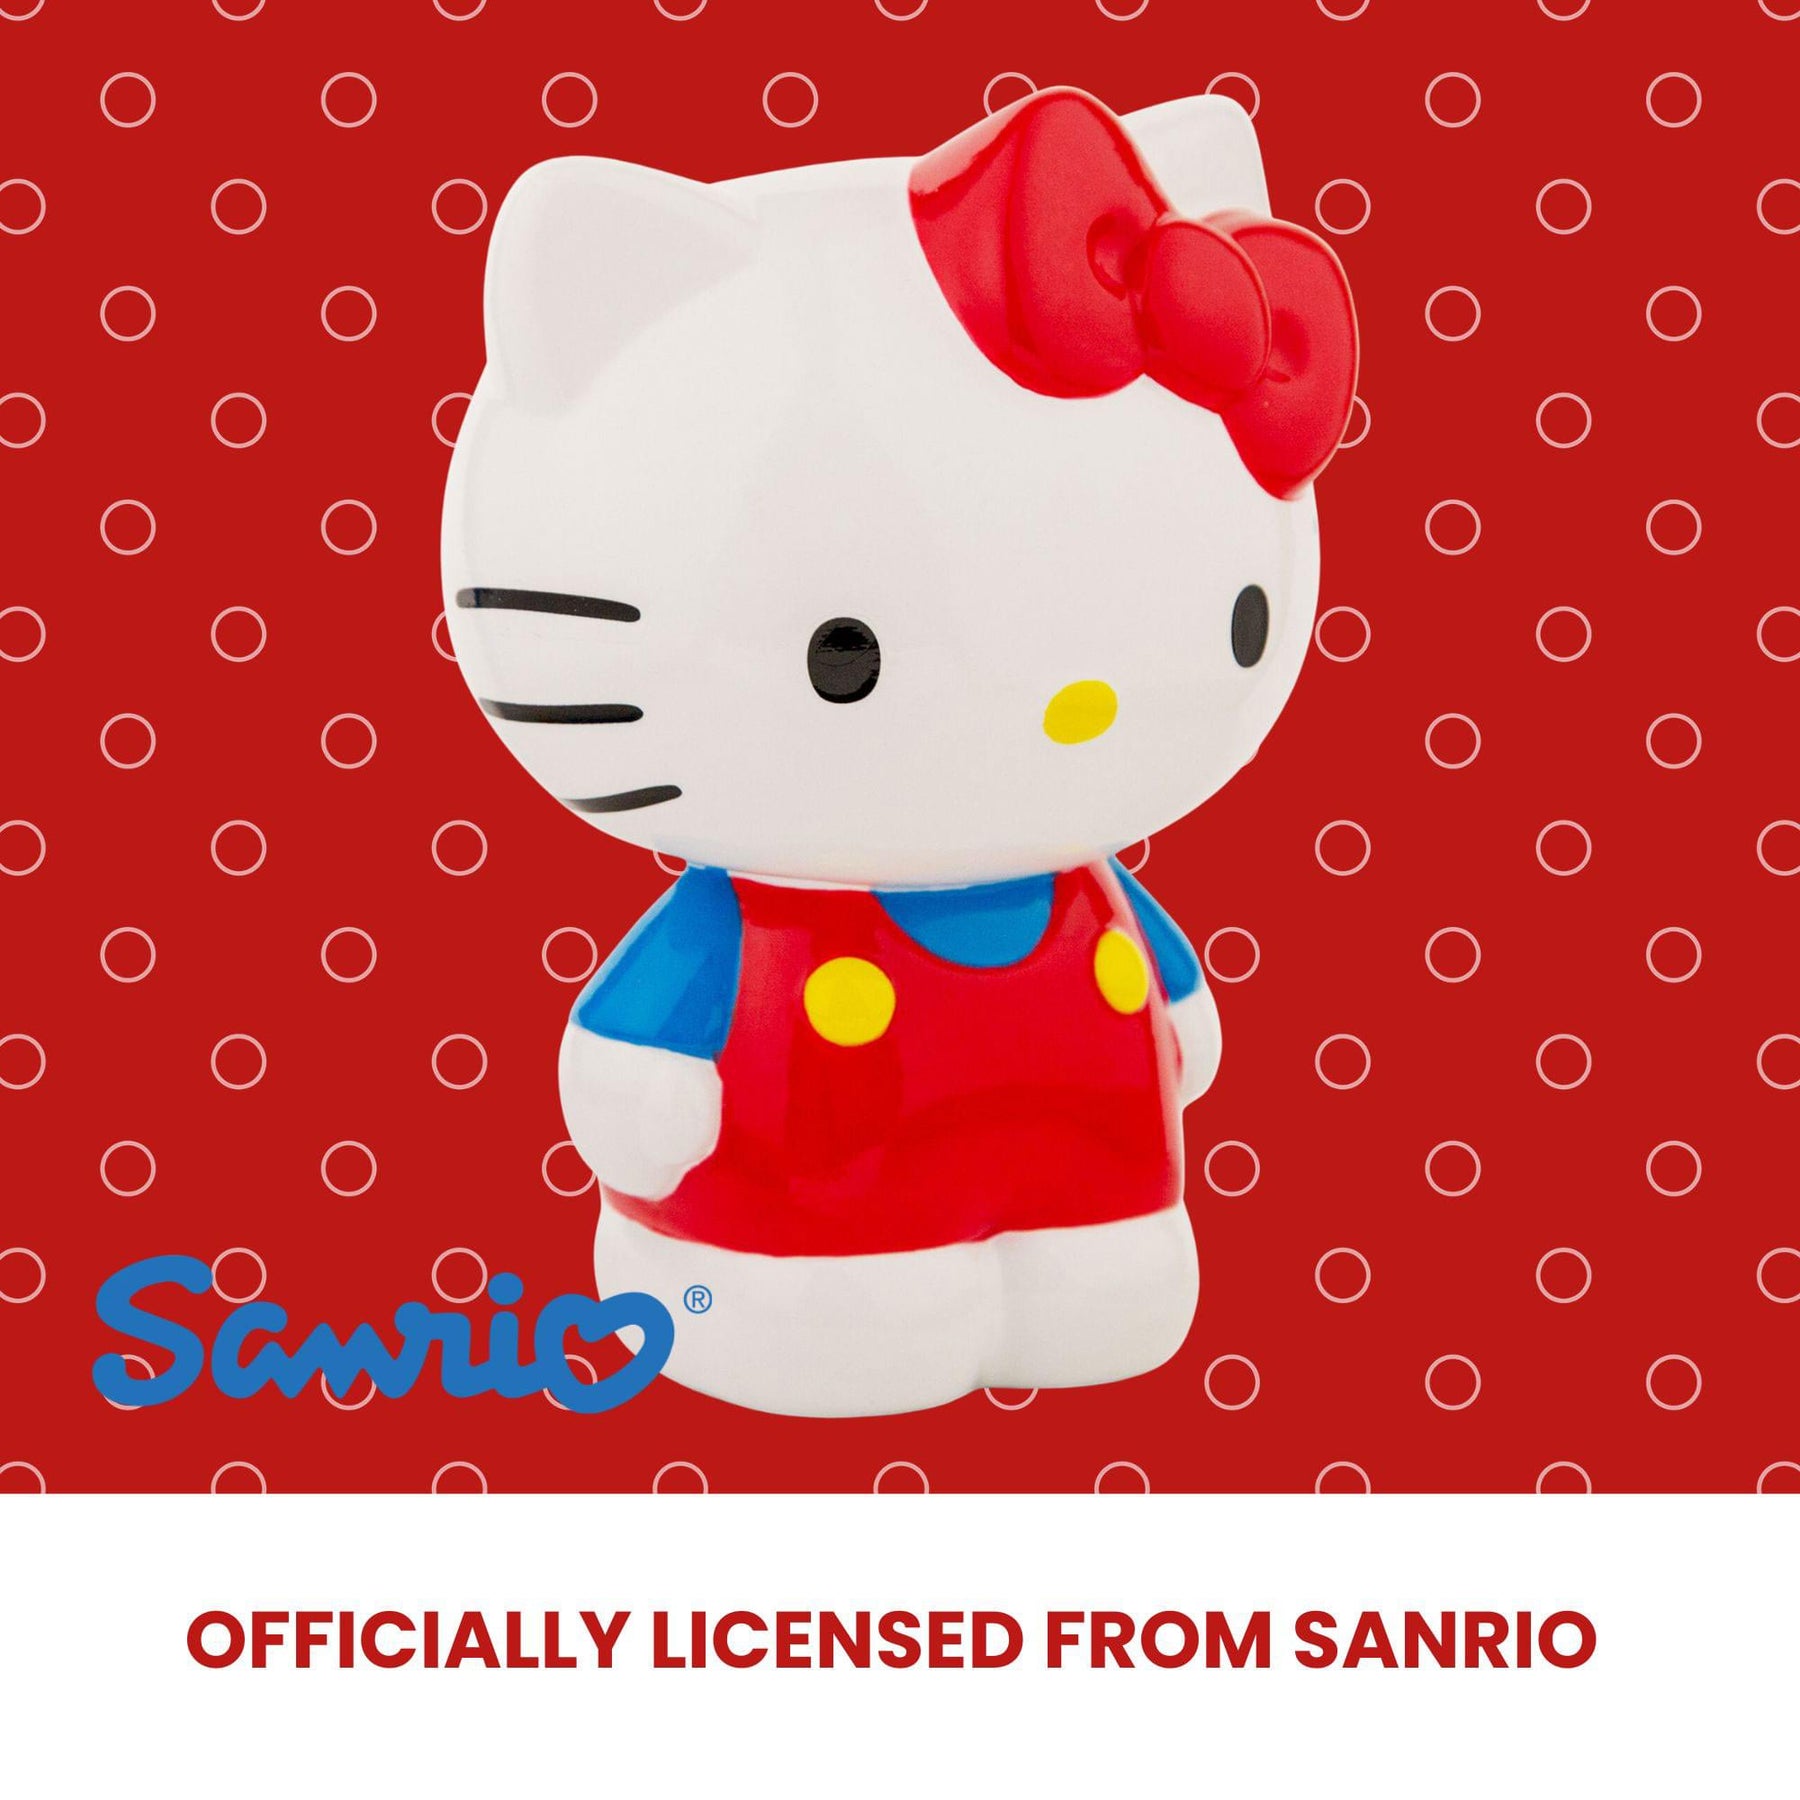 Hello Kitty Cute Fashion Cartoon Portable Pill Box Sanrio Anime